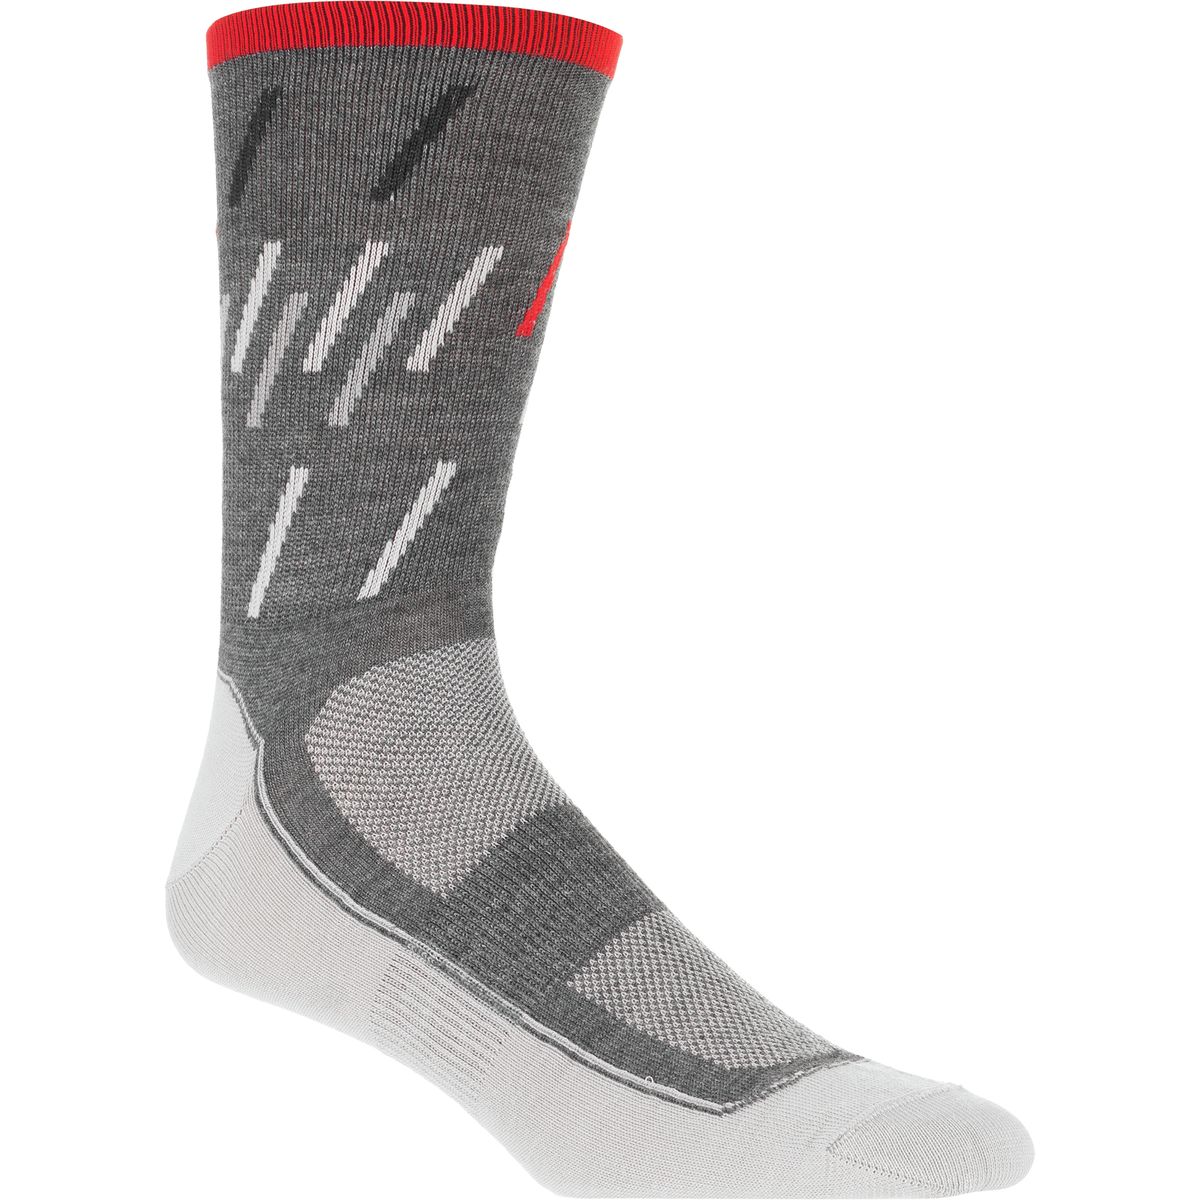 Chpt. III 1.52 Winter Sock Men's